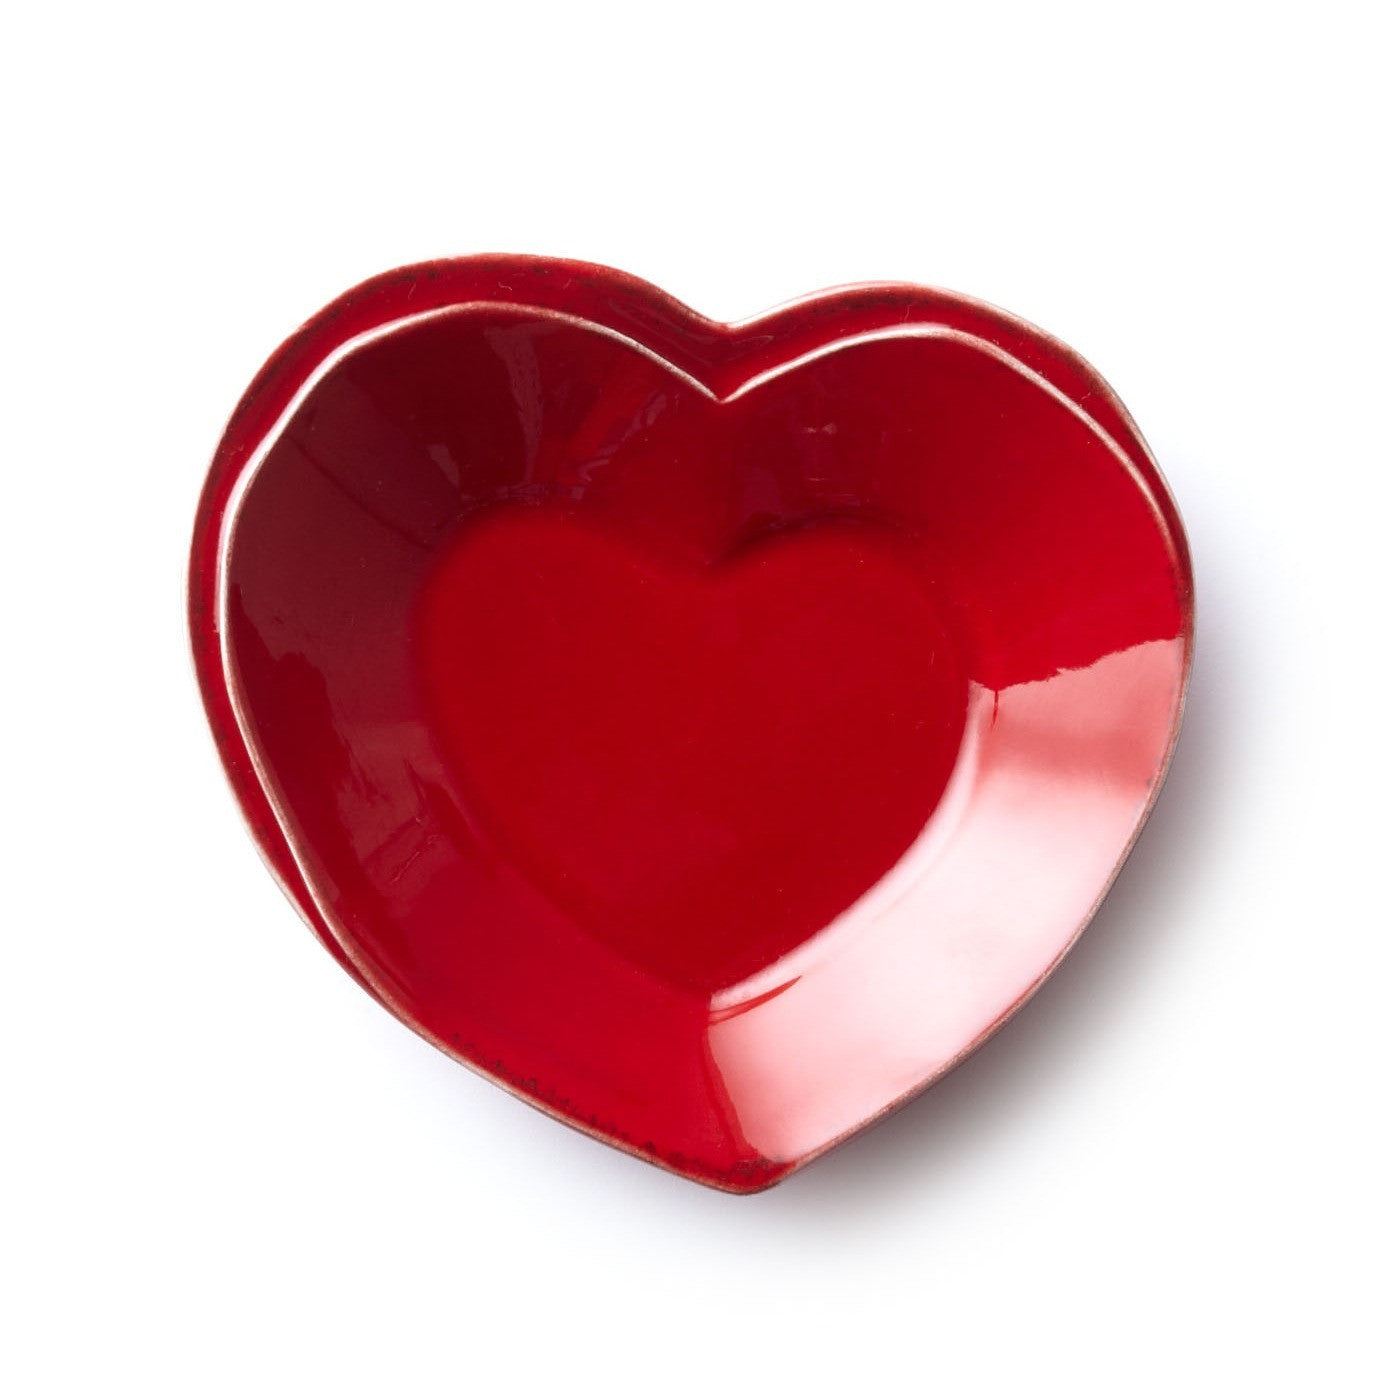 VIETRI: Lastra Red Heart Dish - Artistica.com